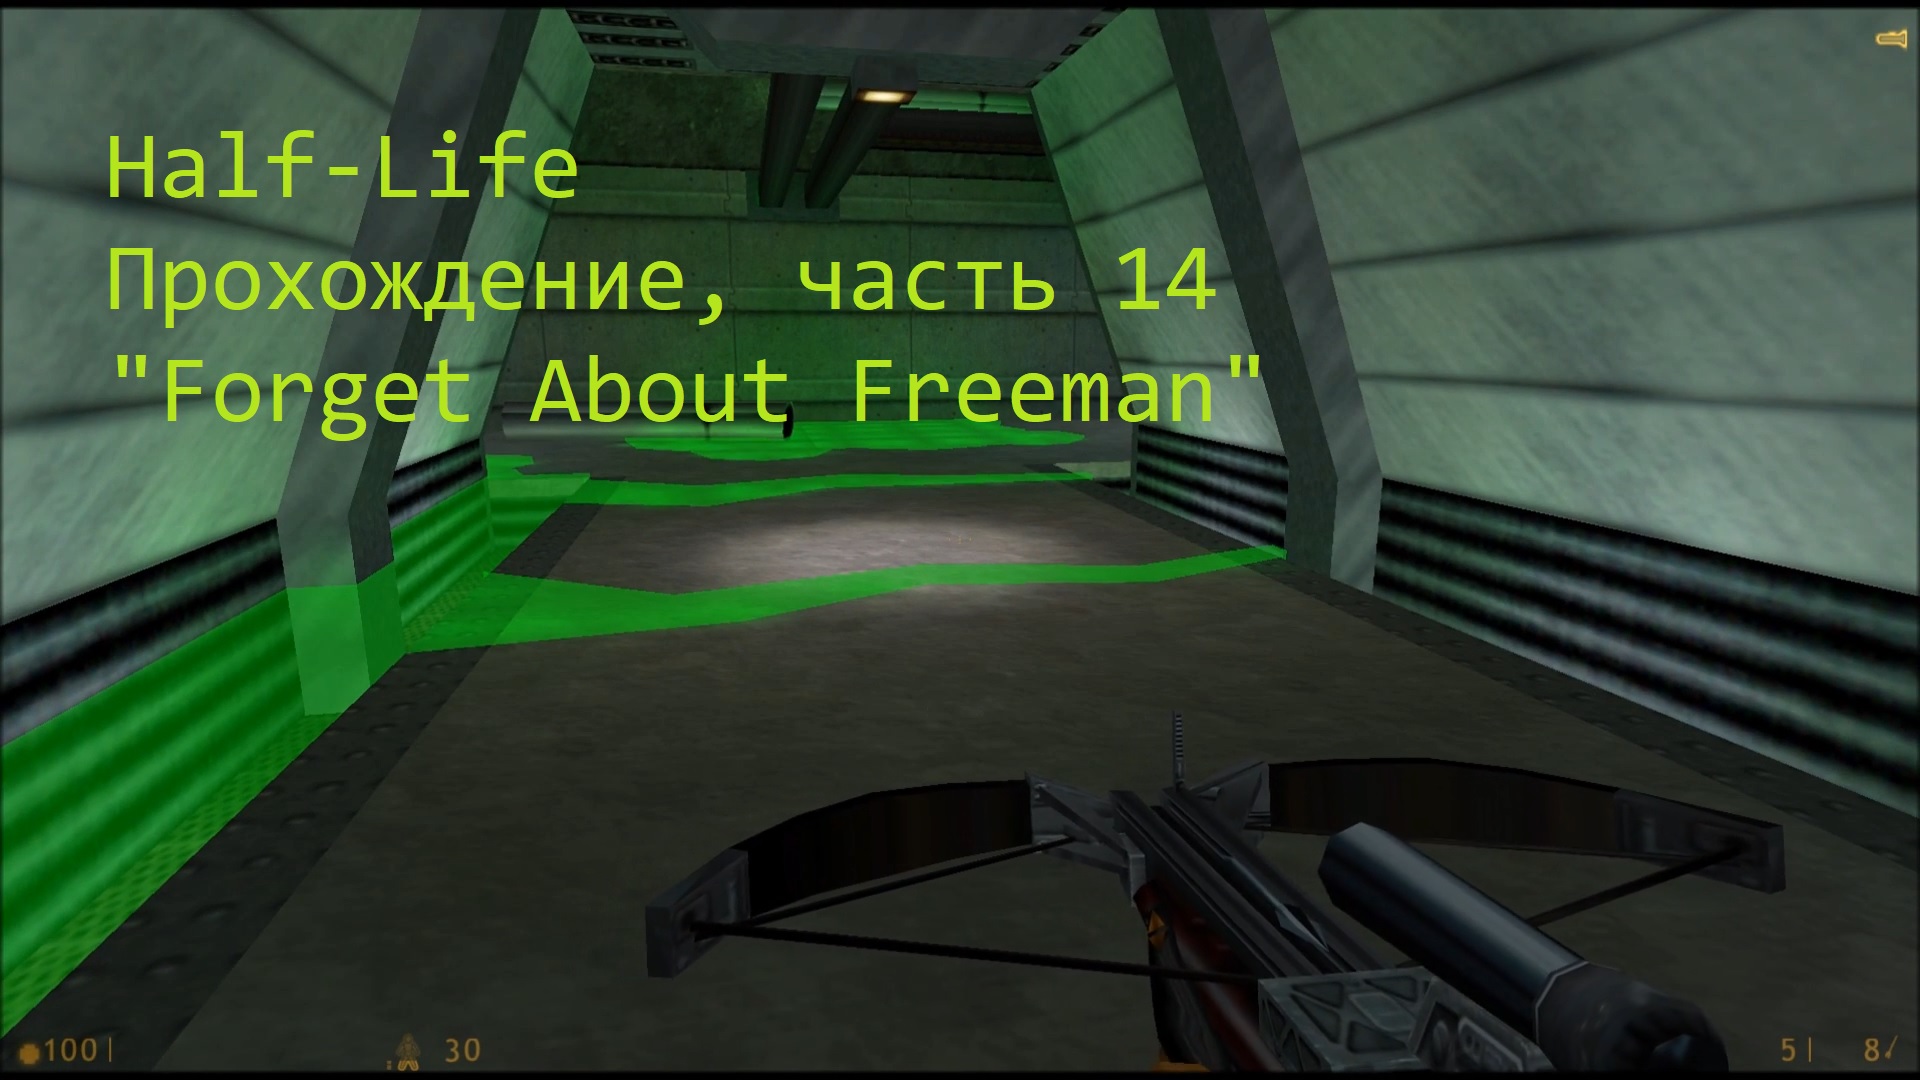 Half-Life, Прохождение, часть 14 - "Forget About Freeman"